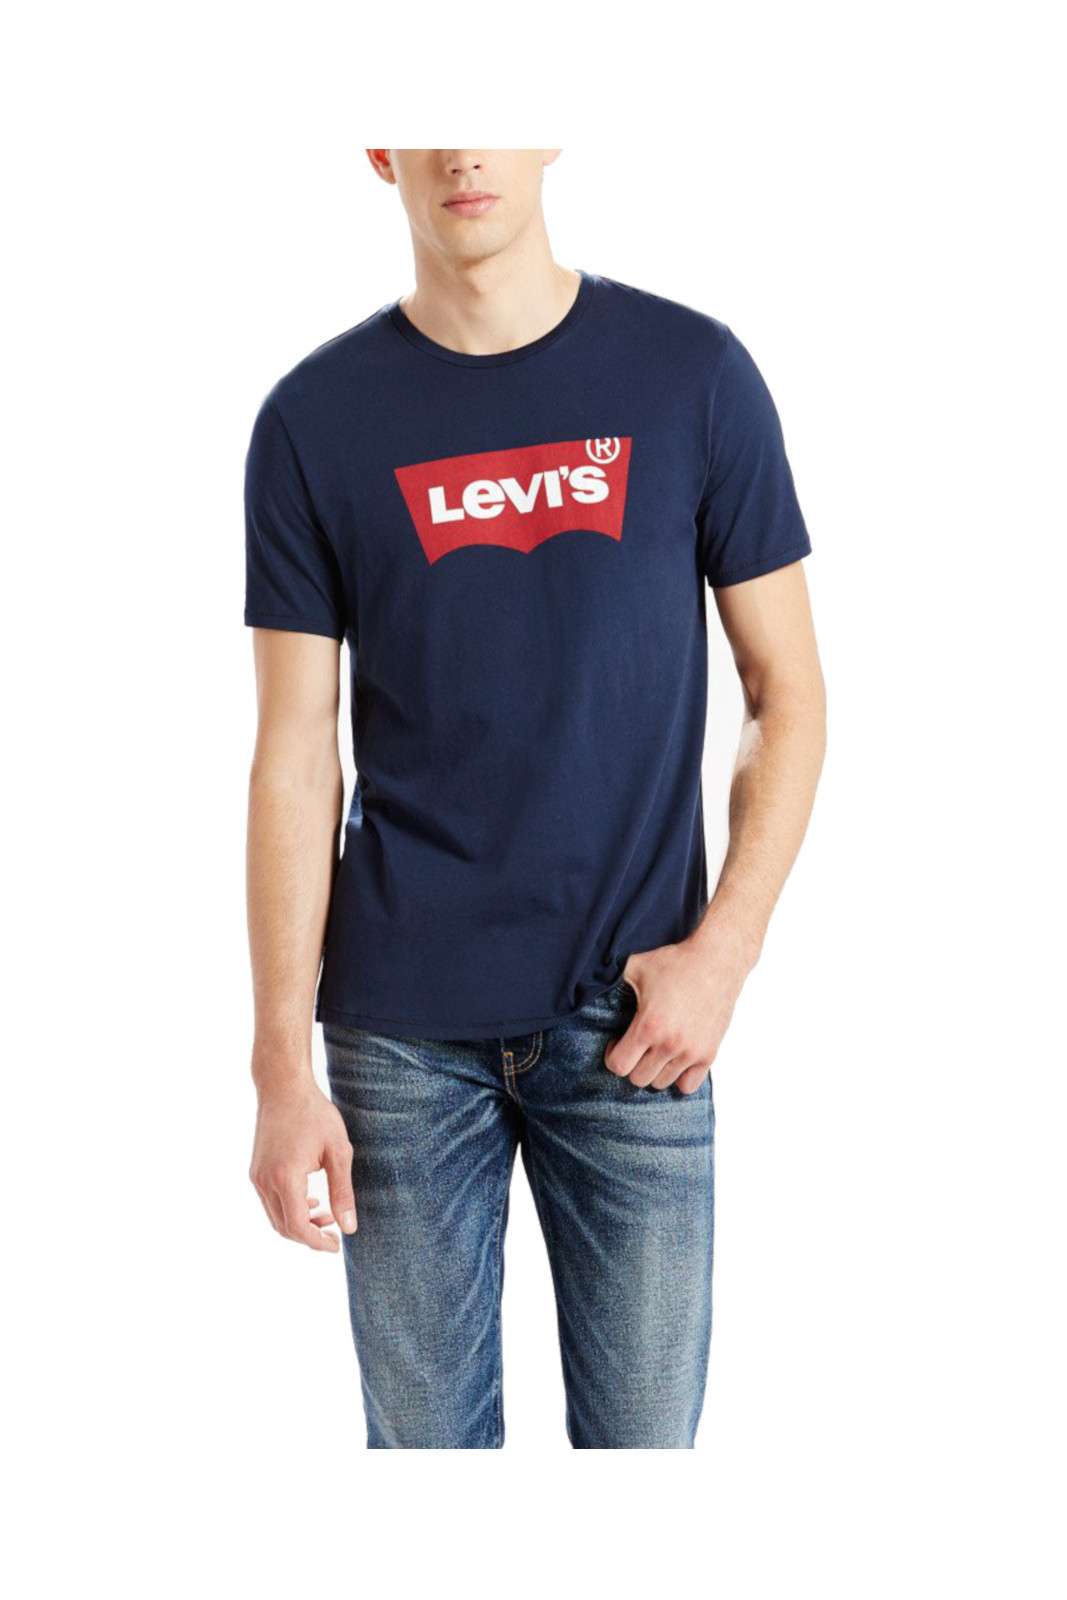 Levi's ® Housemark Tee Men's T shirt